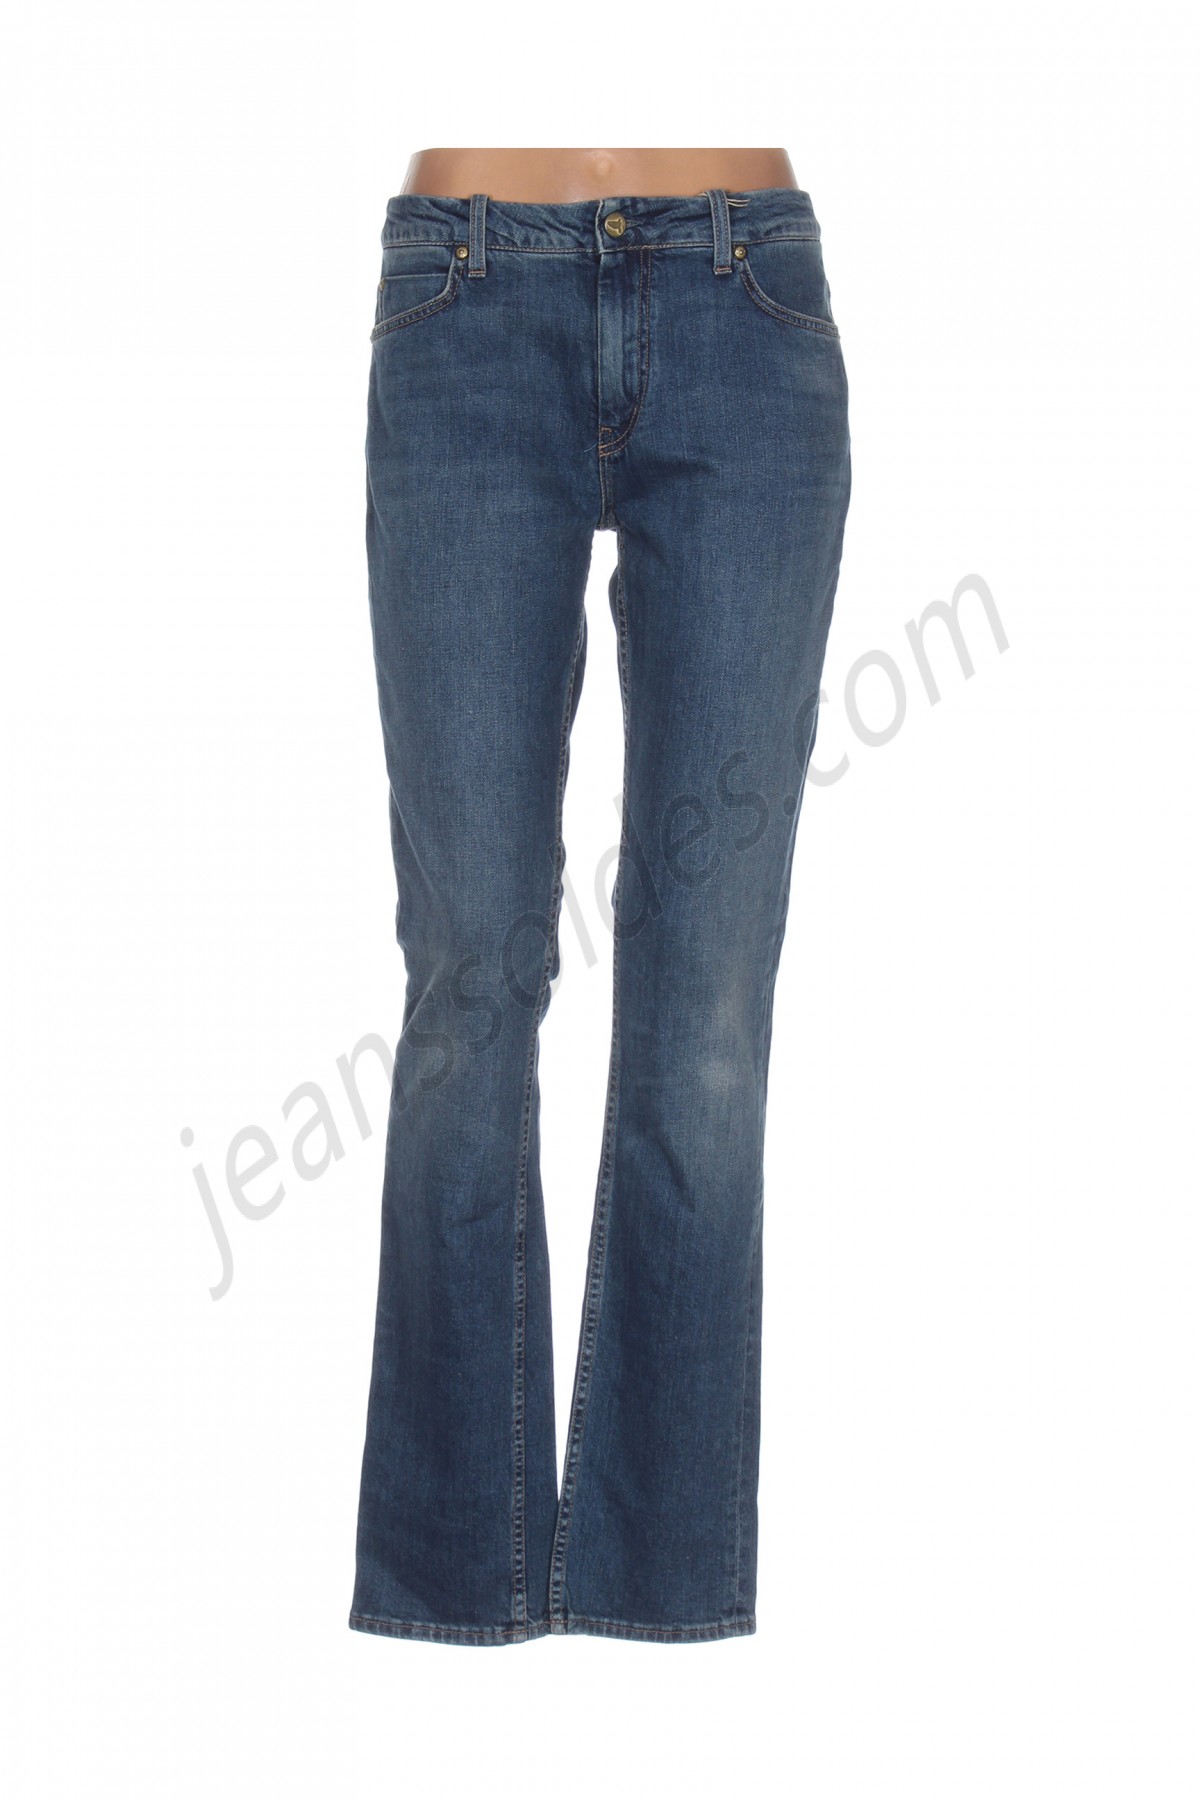 mih jeans-Jeans coupe droite prix d’amis - -0